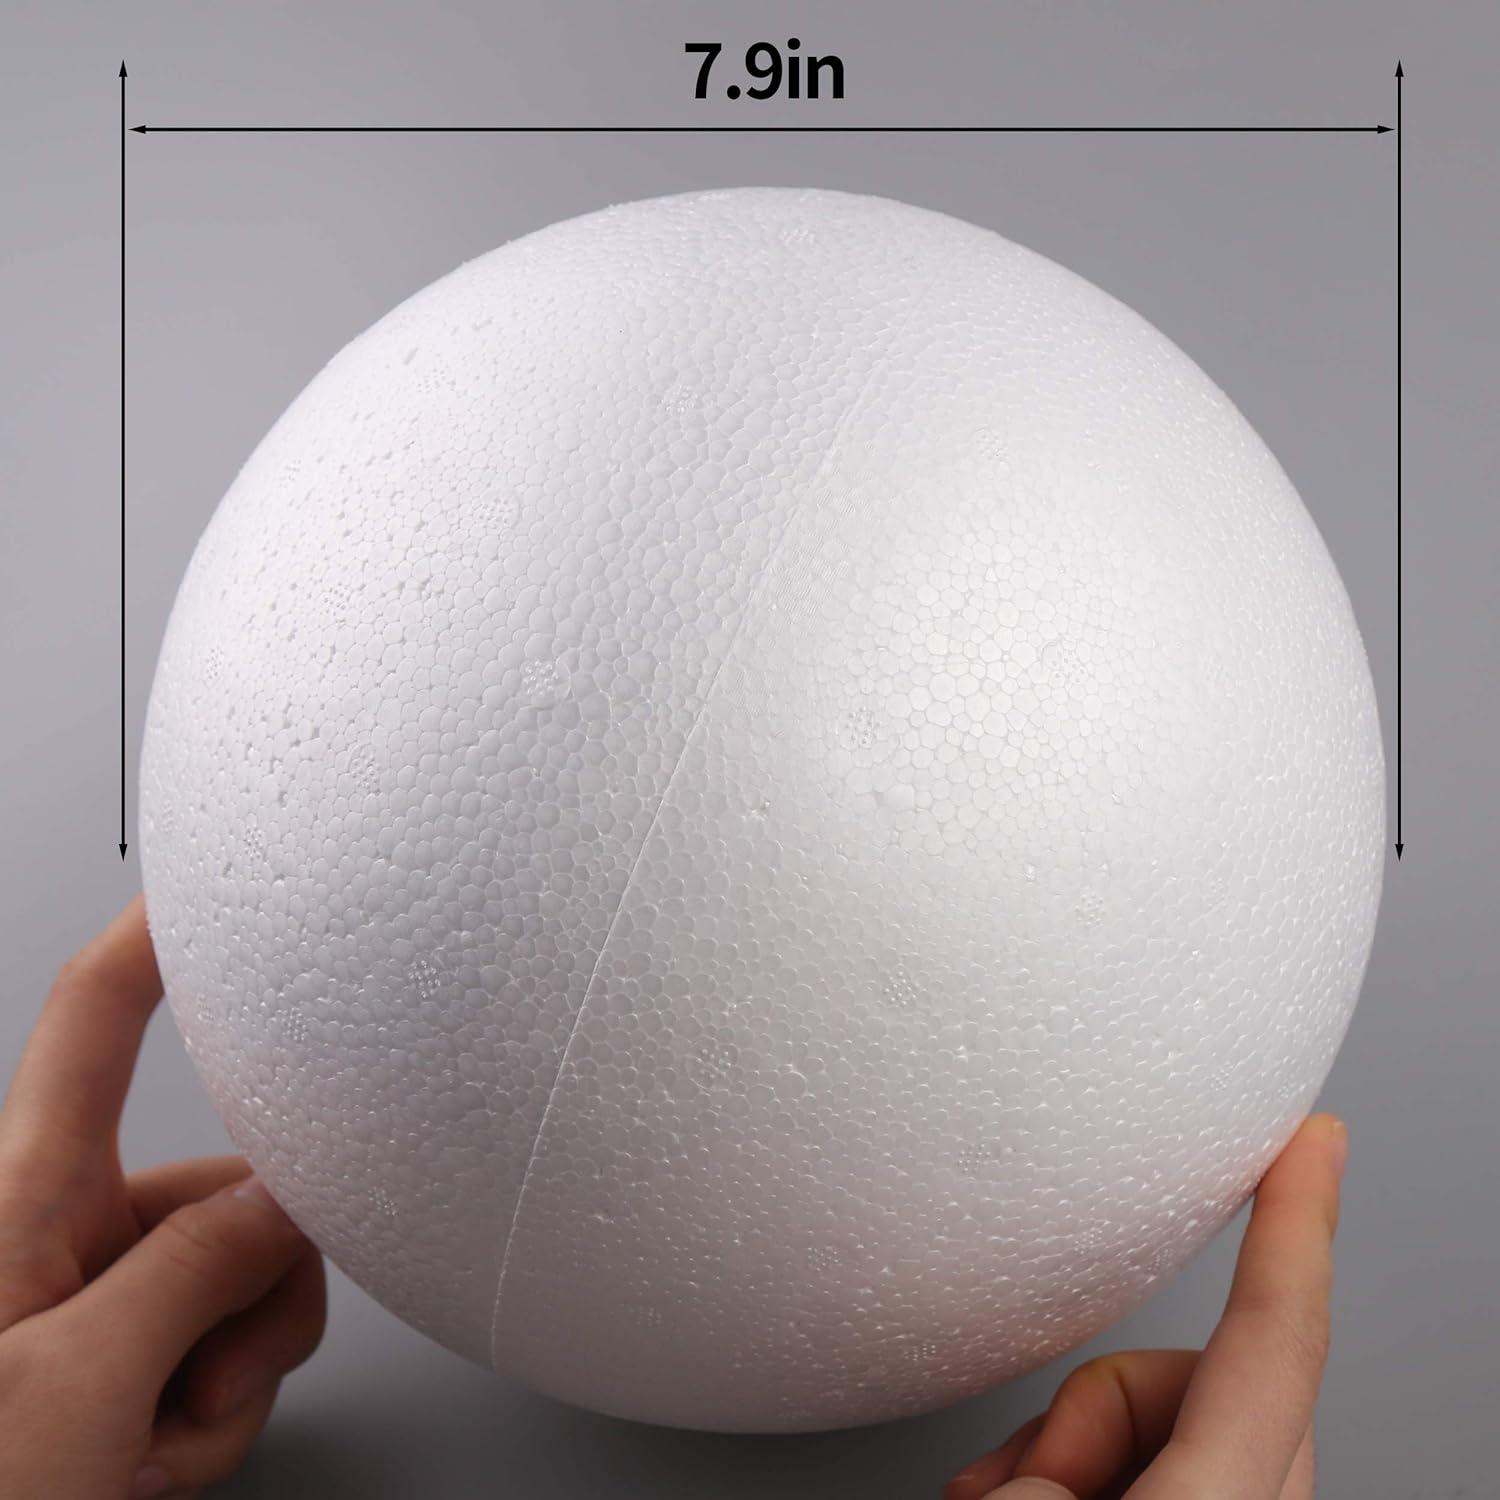 Oversized Mistletoe Balls of STYROFOAM™ Brand Foam - How to Nest for Less™